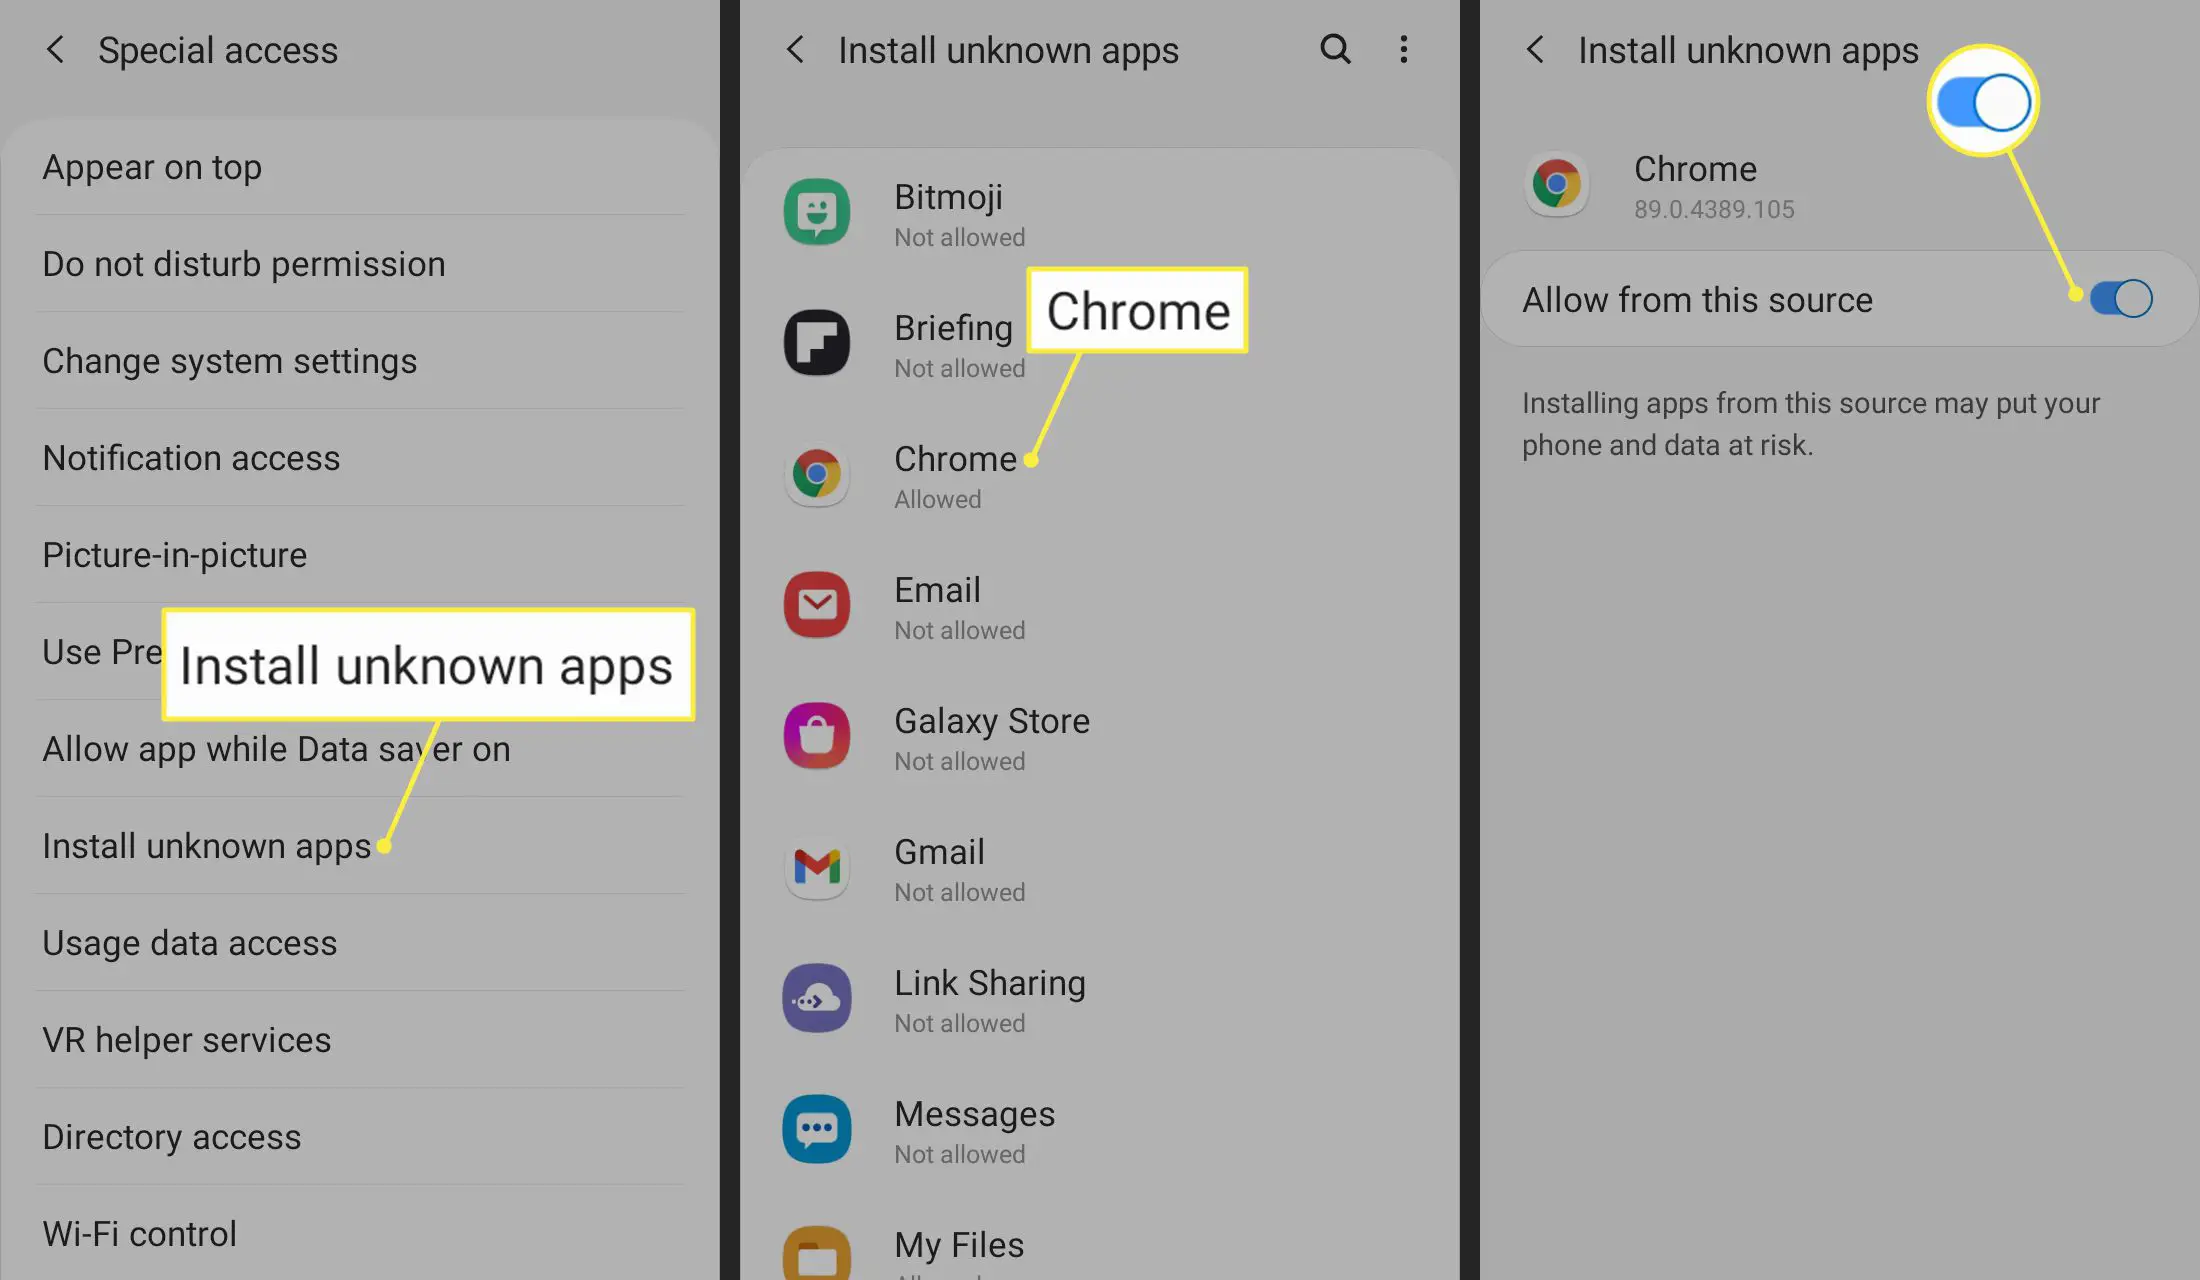 Instale aplicativos desconhecidos, Chrome e Permitir desta fonte alternar nas configurações do Android